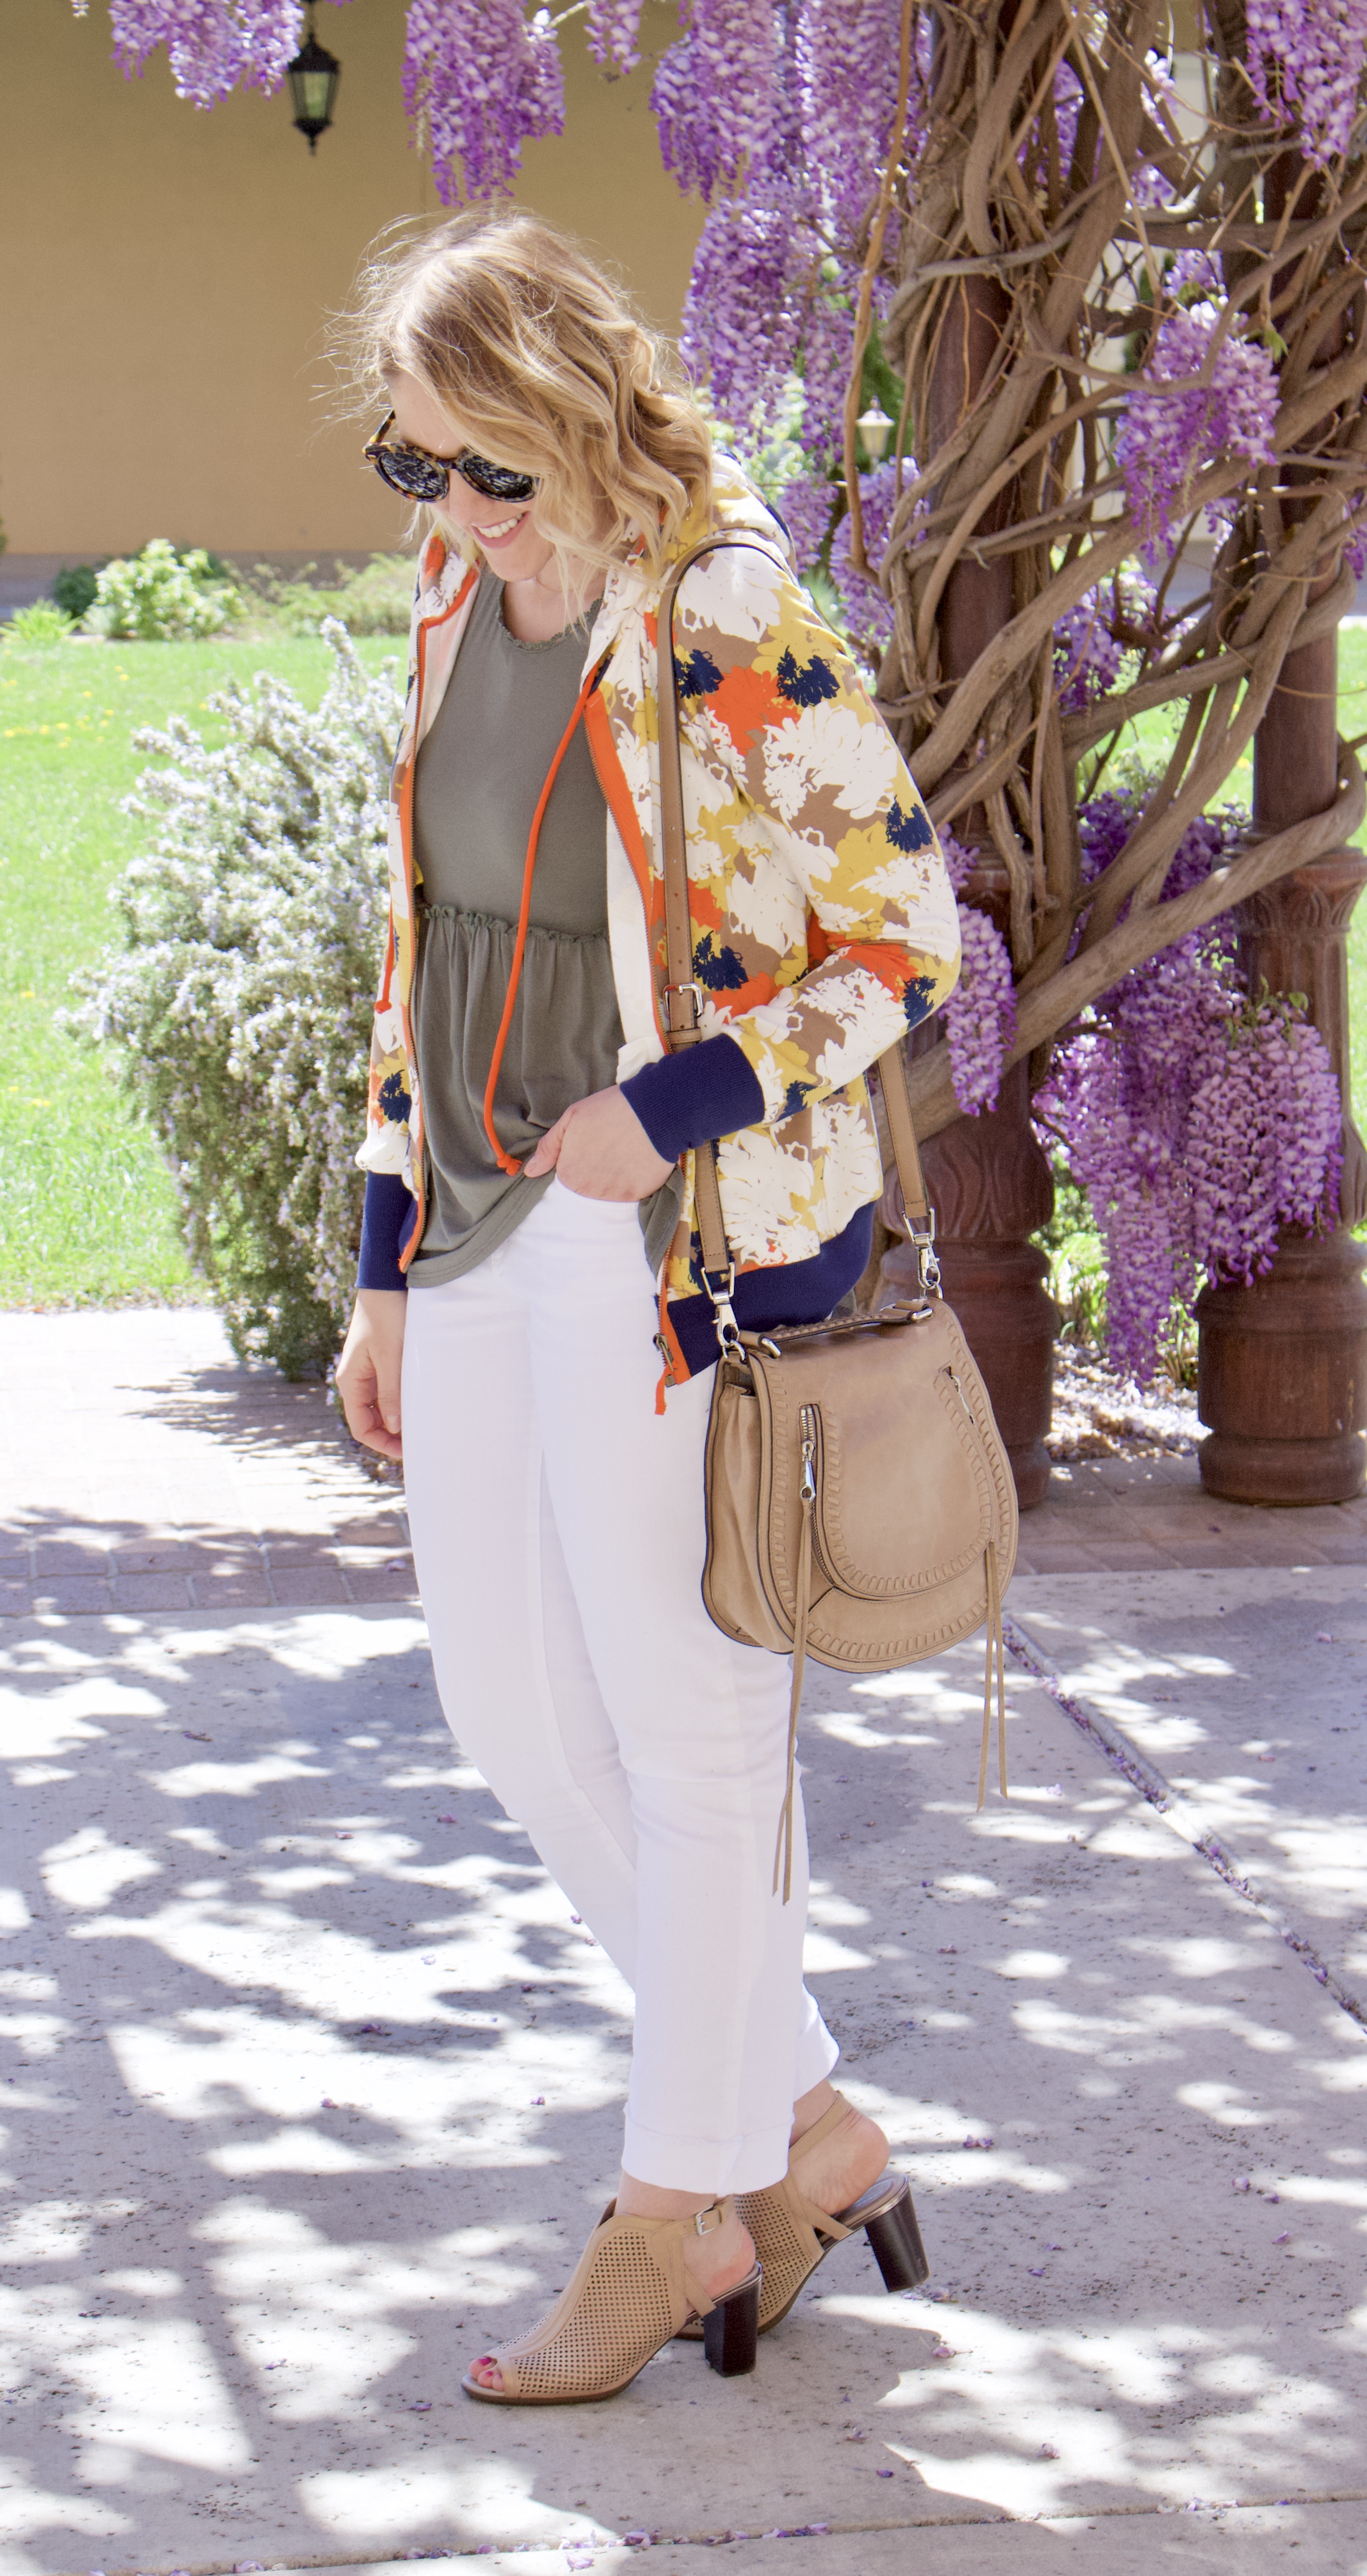 floral print jacket outfit for spring #springstyle #floralprint #fashionlinkup